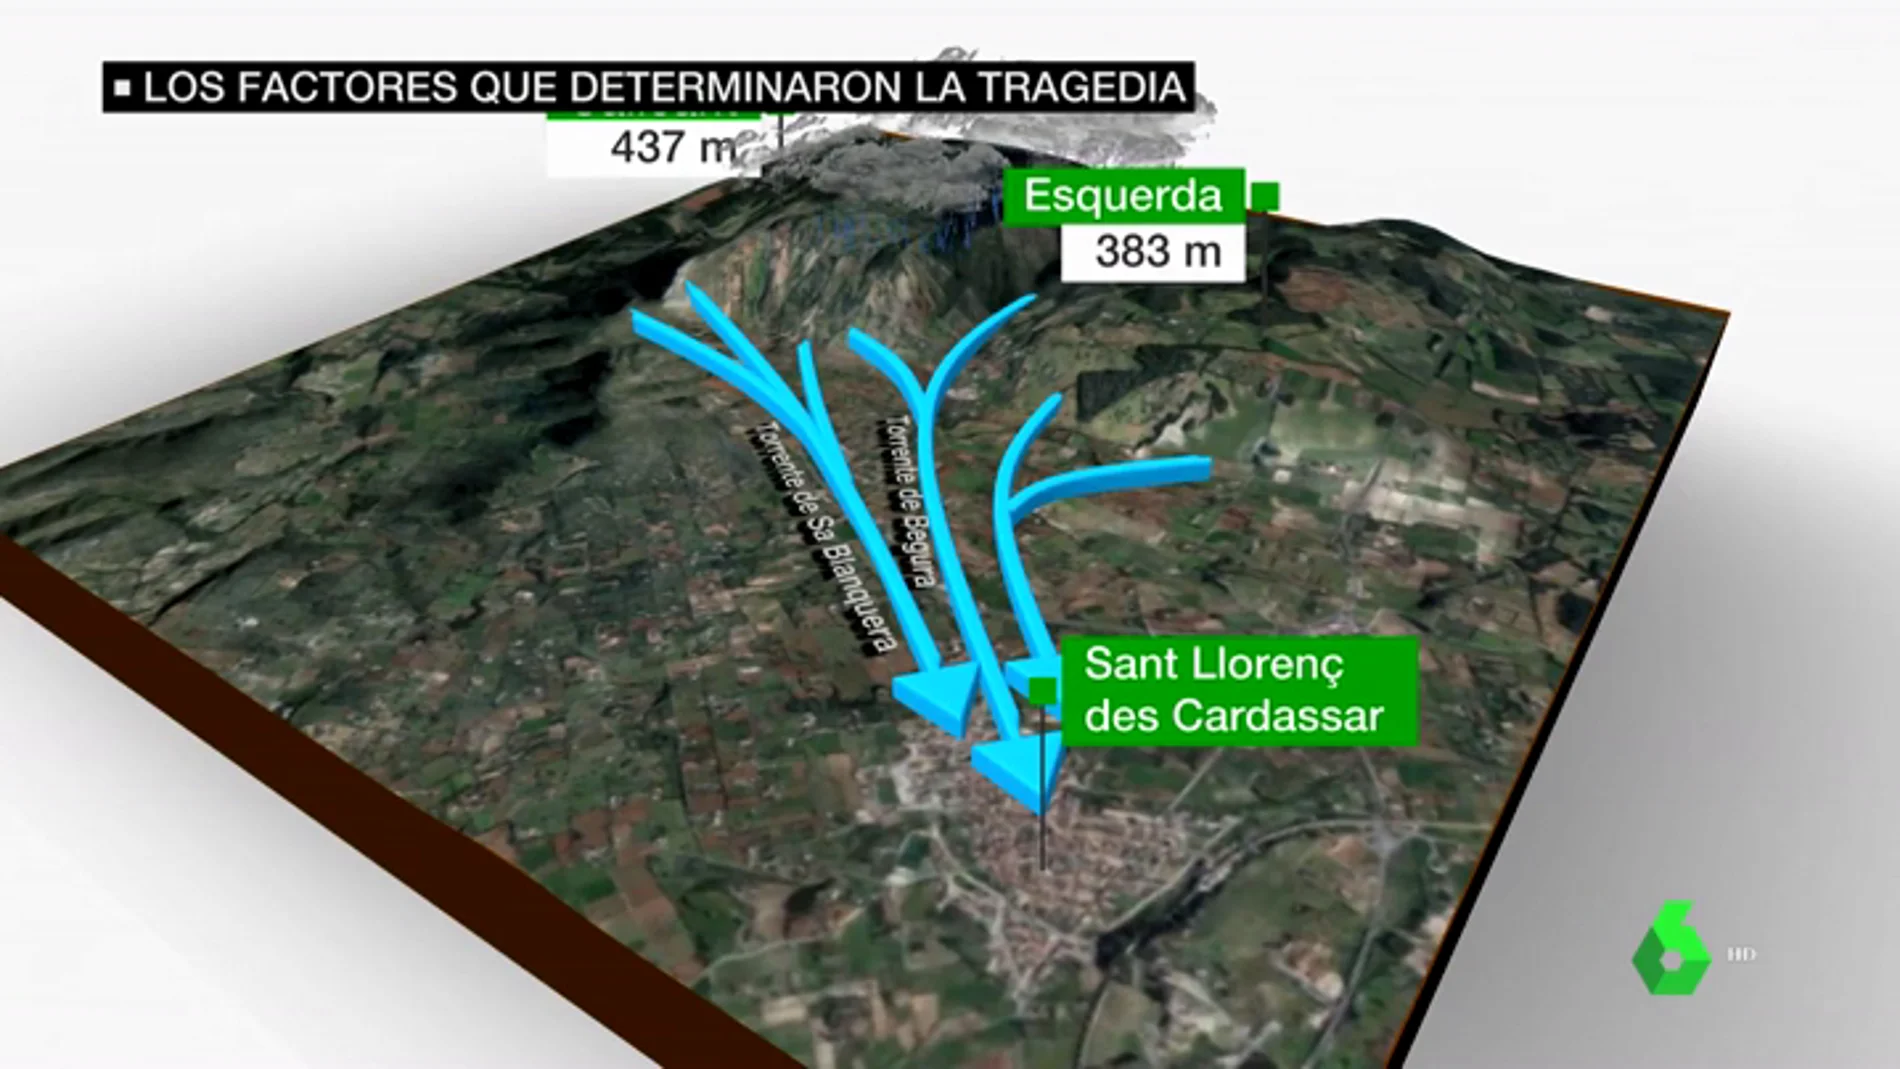 Estos son los factores que provocaron la catástrofe en Sant Llorenç: "Se ha generado una bomba explosiva"